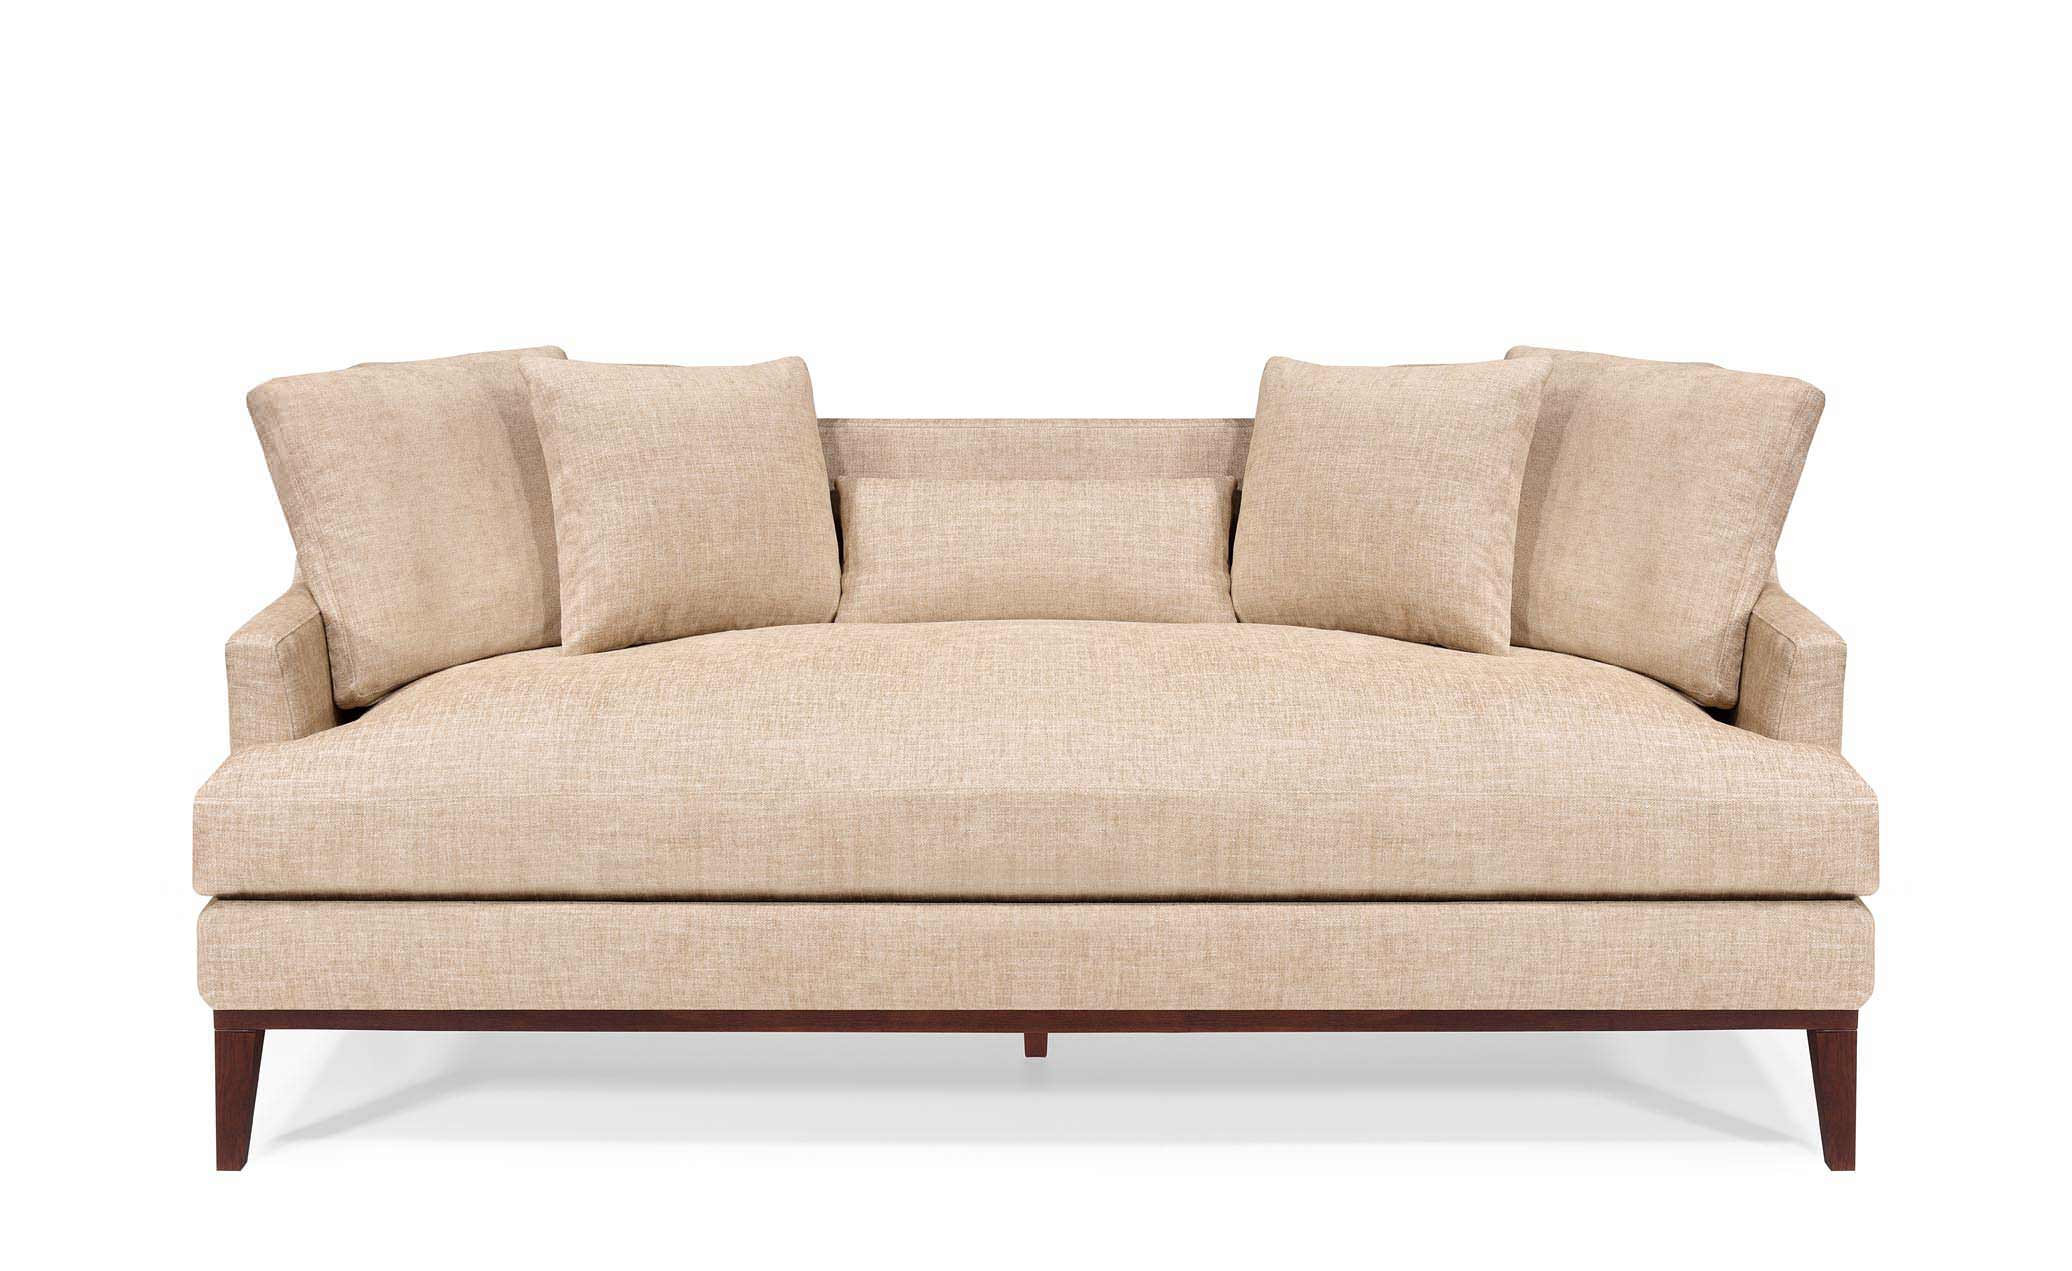 Classically elegant sofa